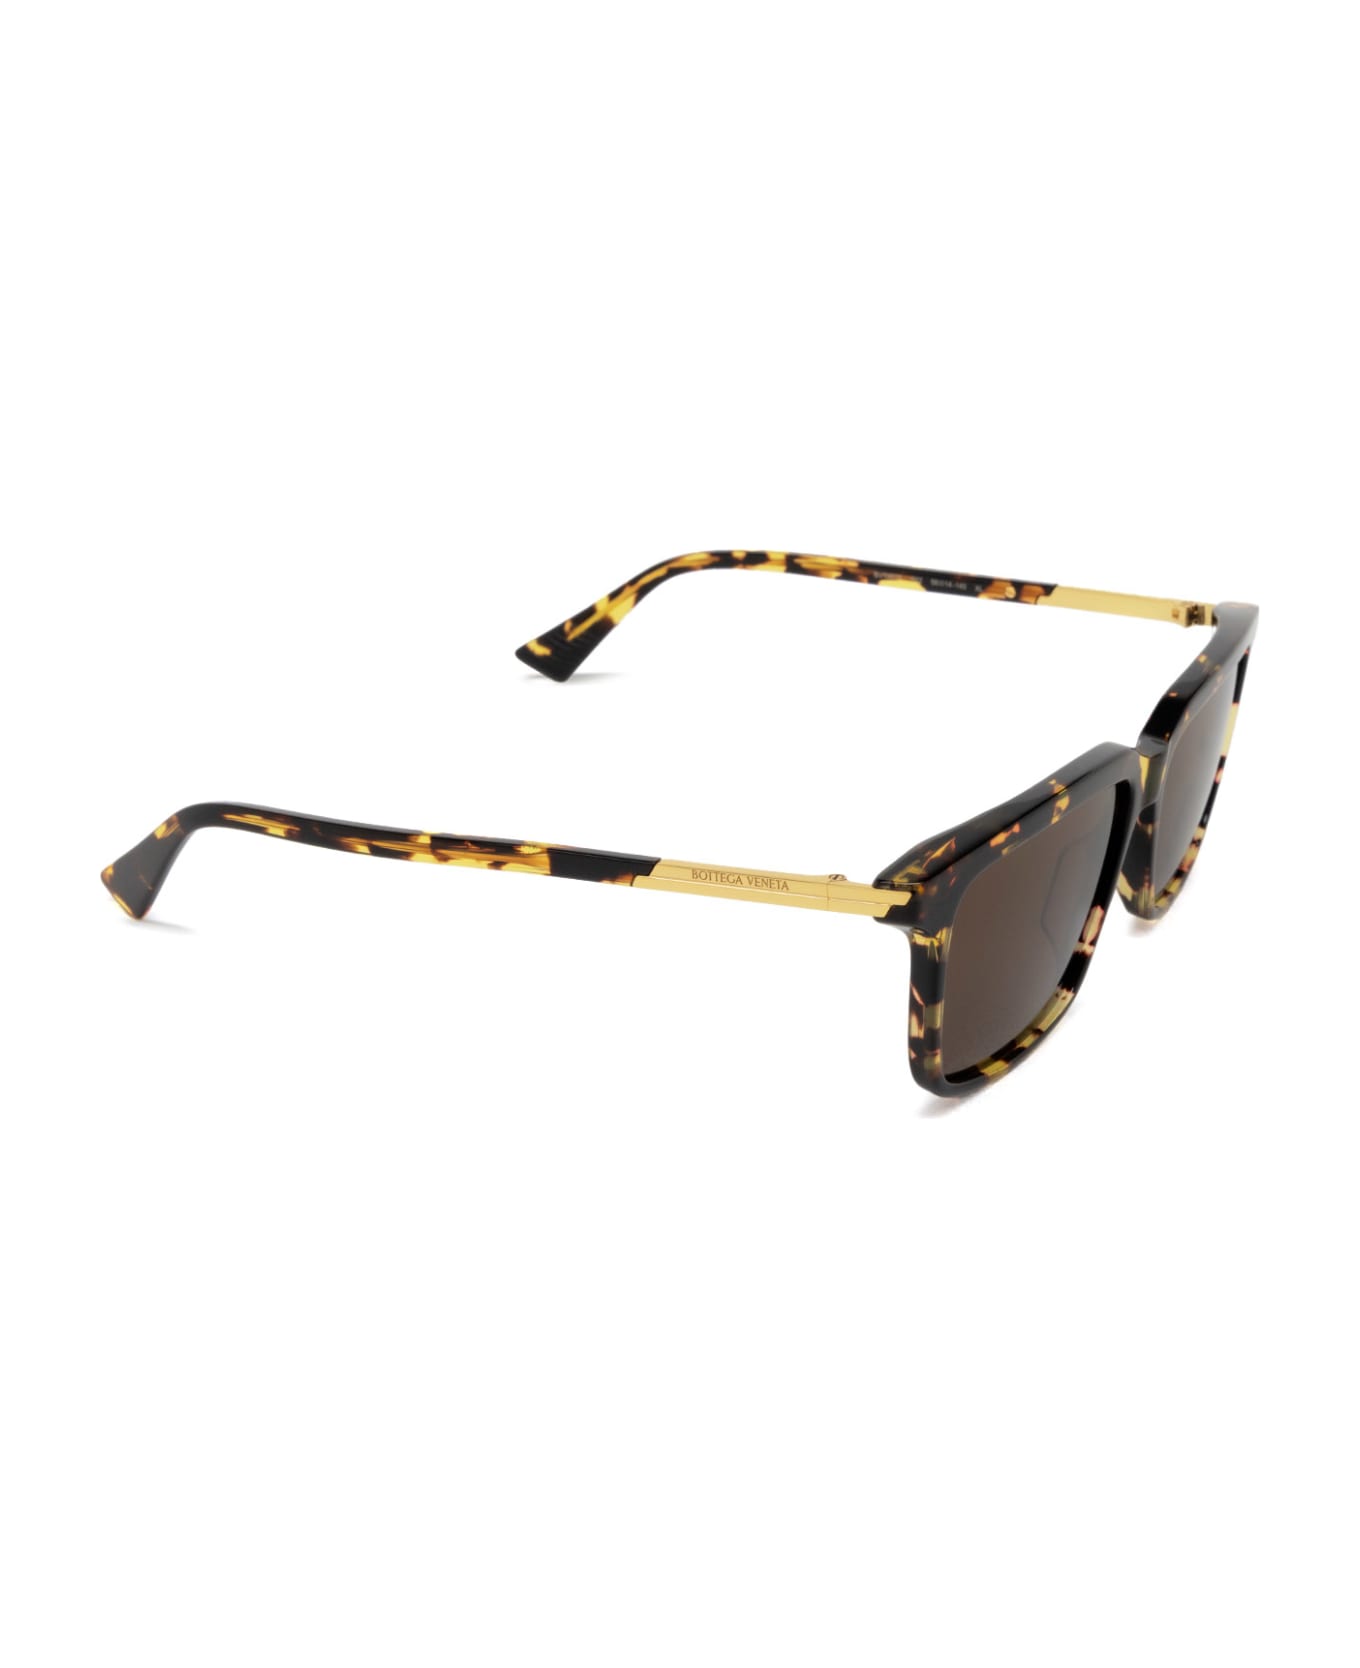 Bottega Veneta Eyewear Bv1261s Havana Sunglasses - Havana